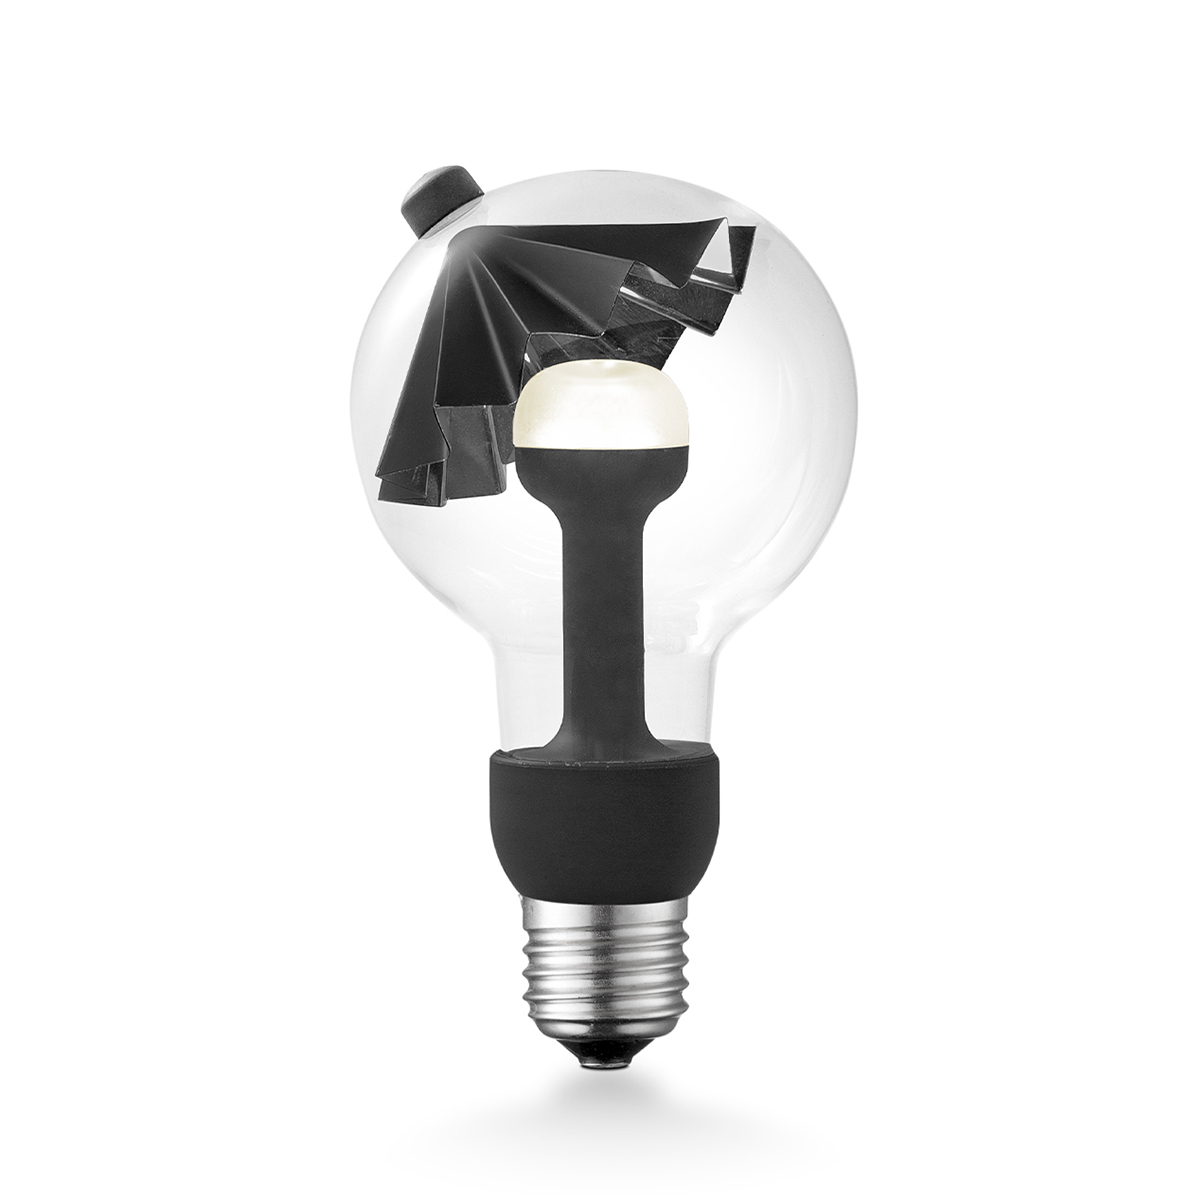 Tangla lighting - 0370-07-N - LED Light Bulb Move me - G80 3W Umbrella black - E27 / E26